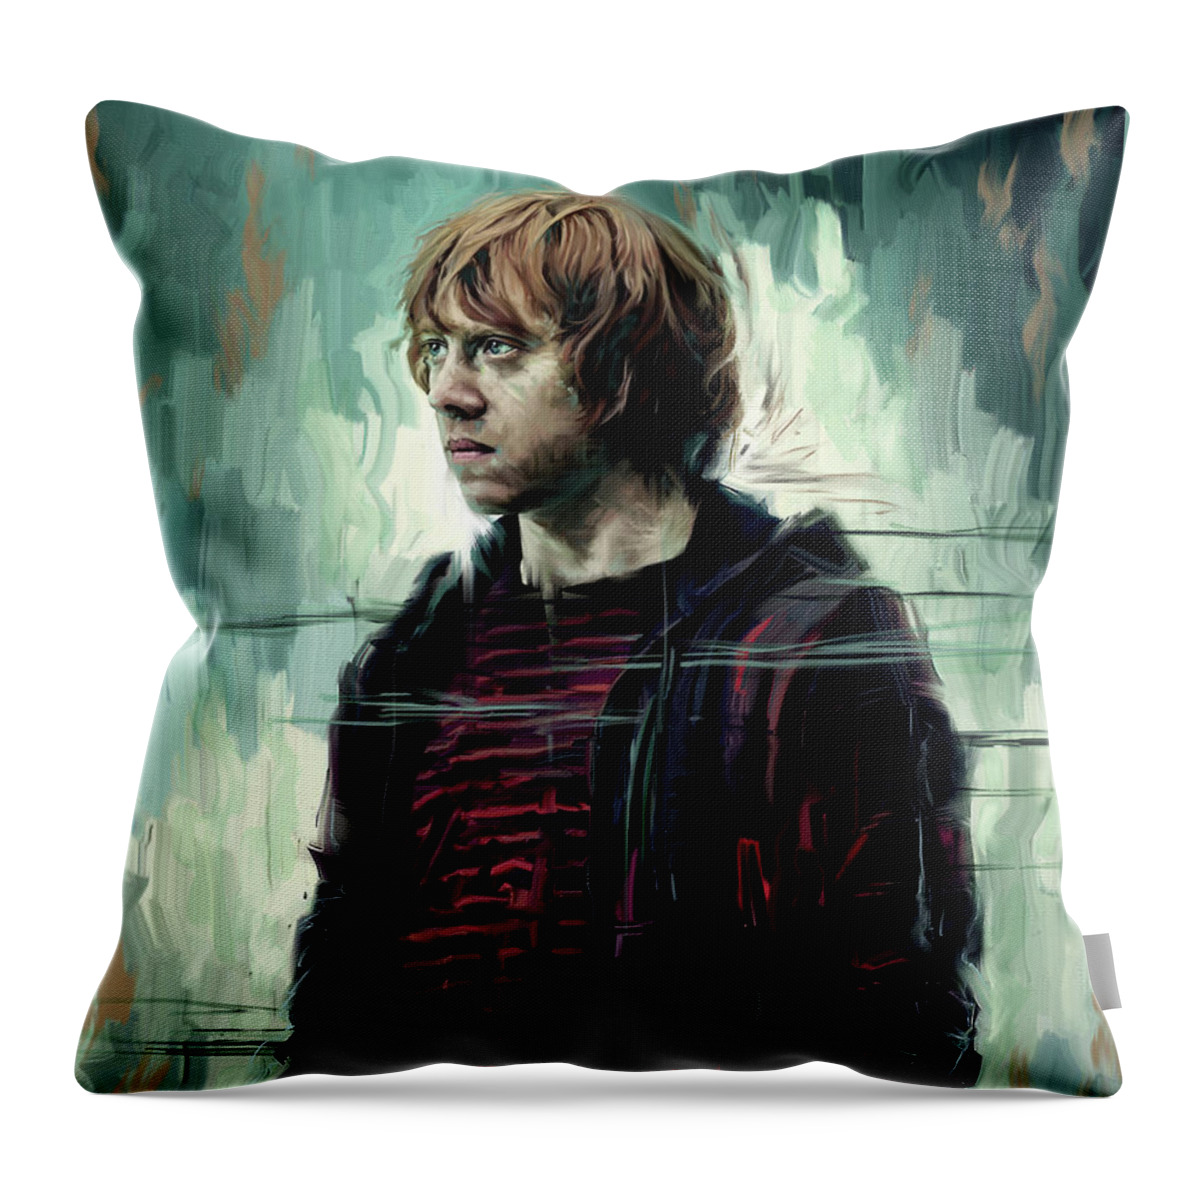 Pop Icons Throw Pillow featuring the digital art Rupert Grint as Ronald Weasley by Garth Glazier